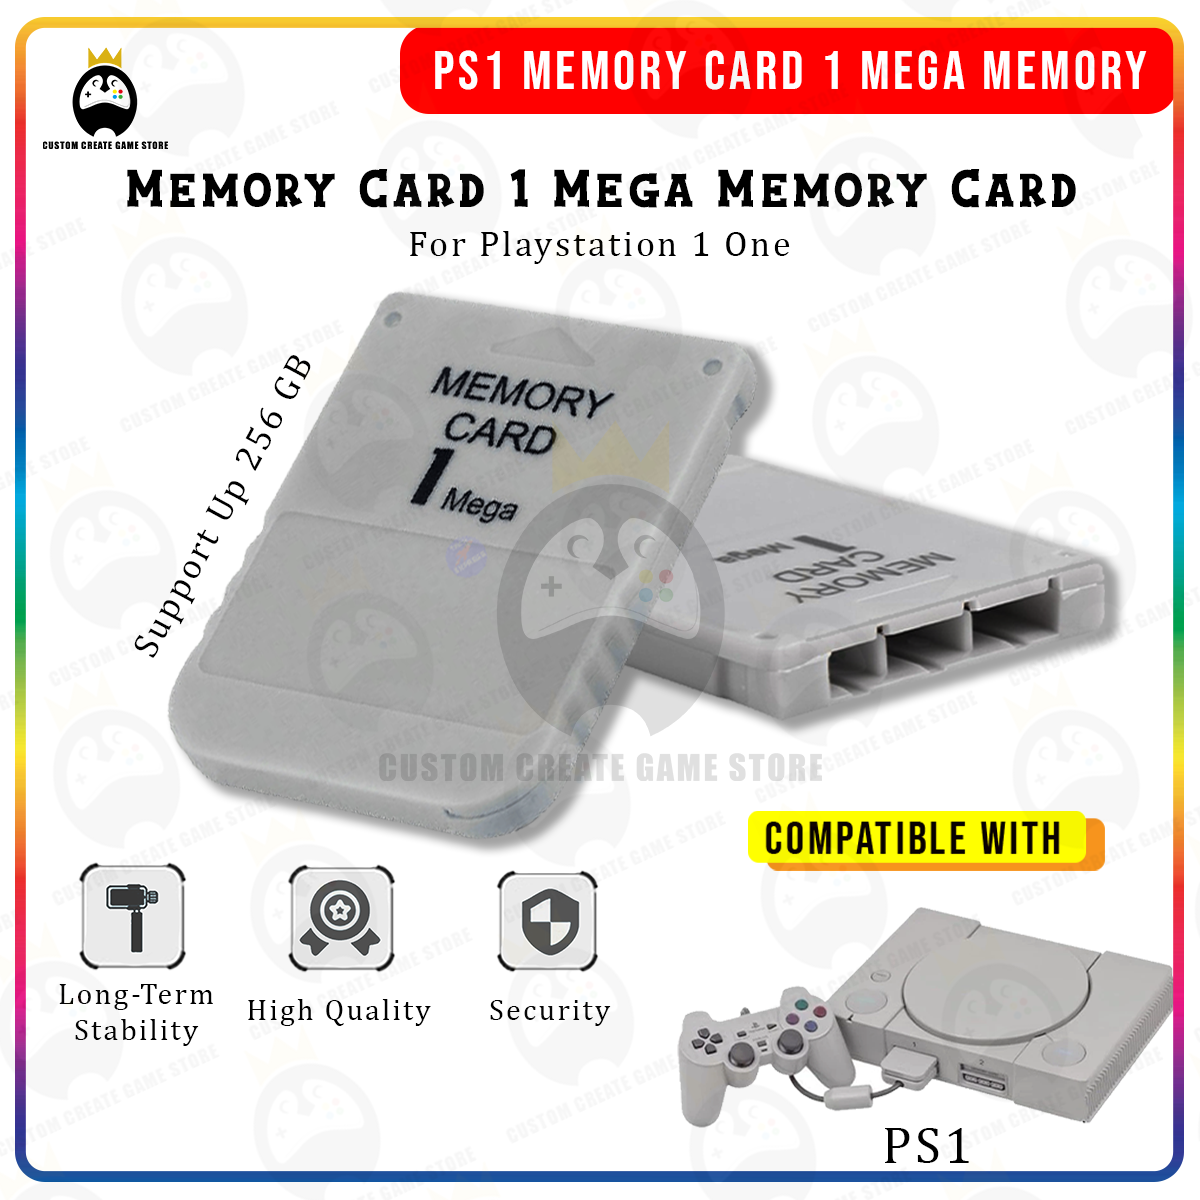 FancyswES8eety Tarjeta de Memoria PS1 1 Tarjeta de Memoria Mega para Playstation 1 Un Juego de PS1 PSX Útil Práctico Asequible Blanco 1M 1MB 